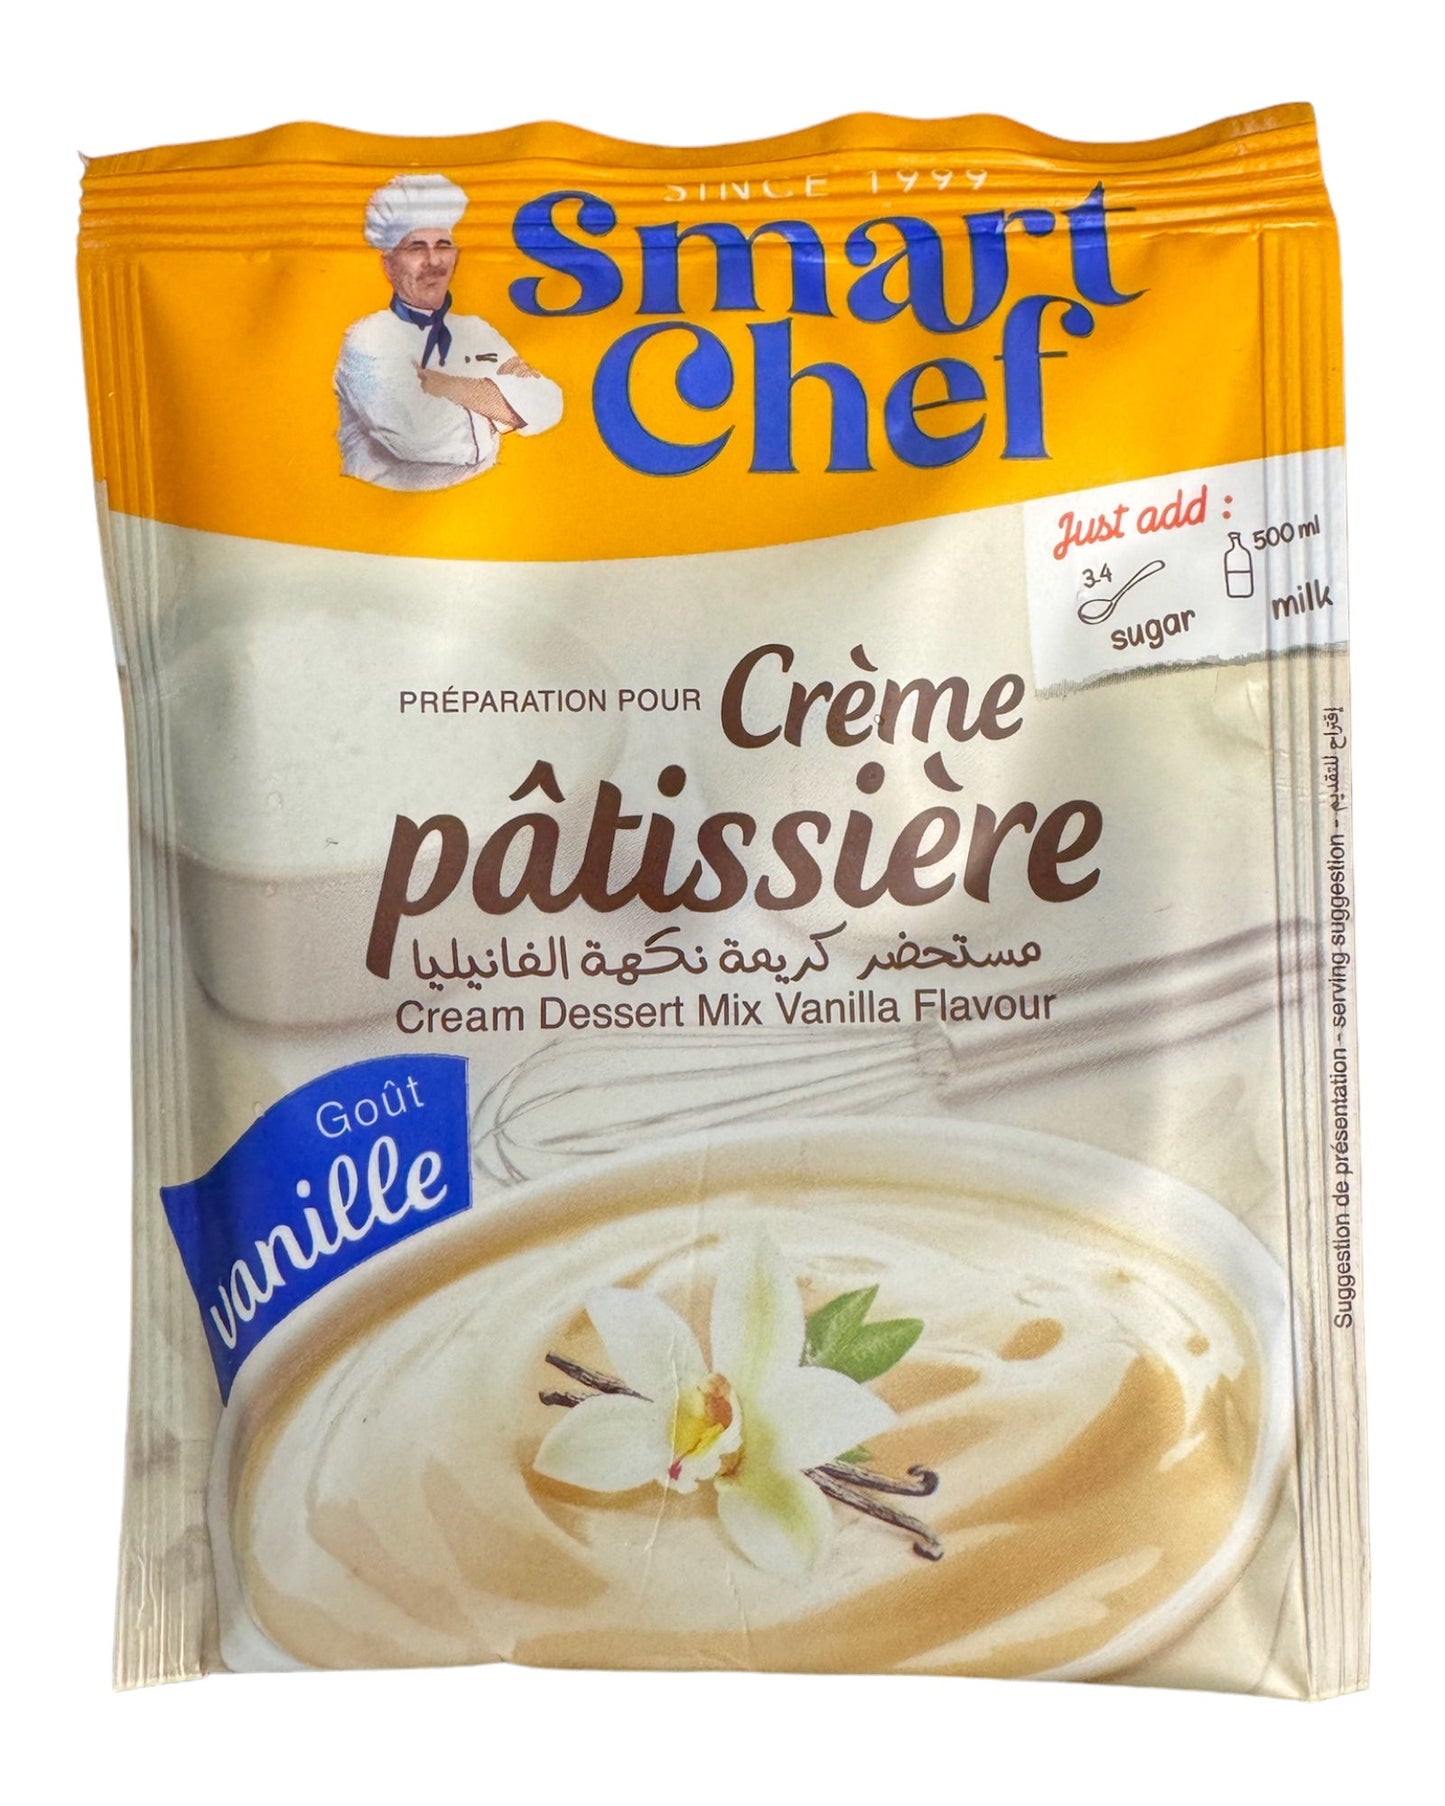 Smart Chef Cream Dessert Mix Vanilla Flavour 38g